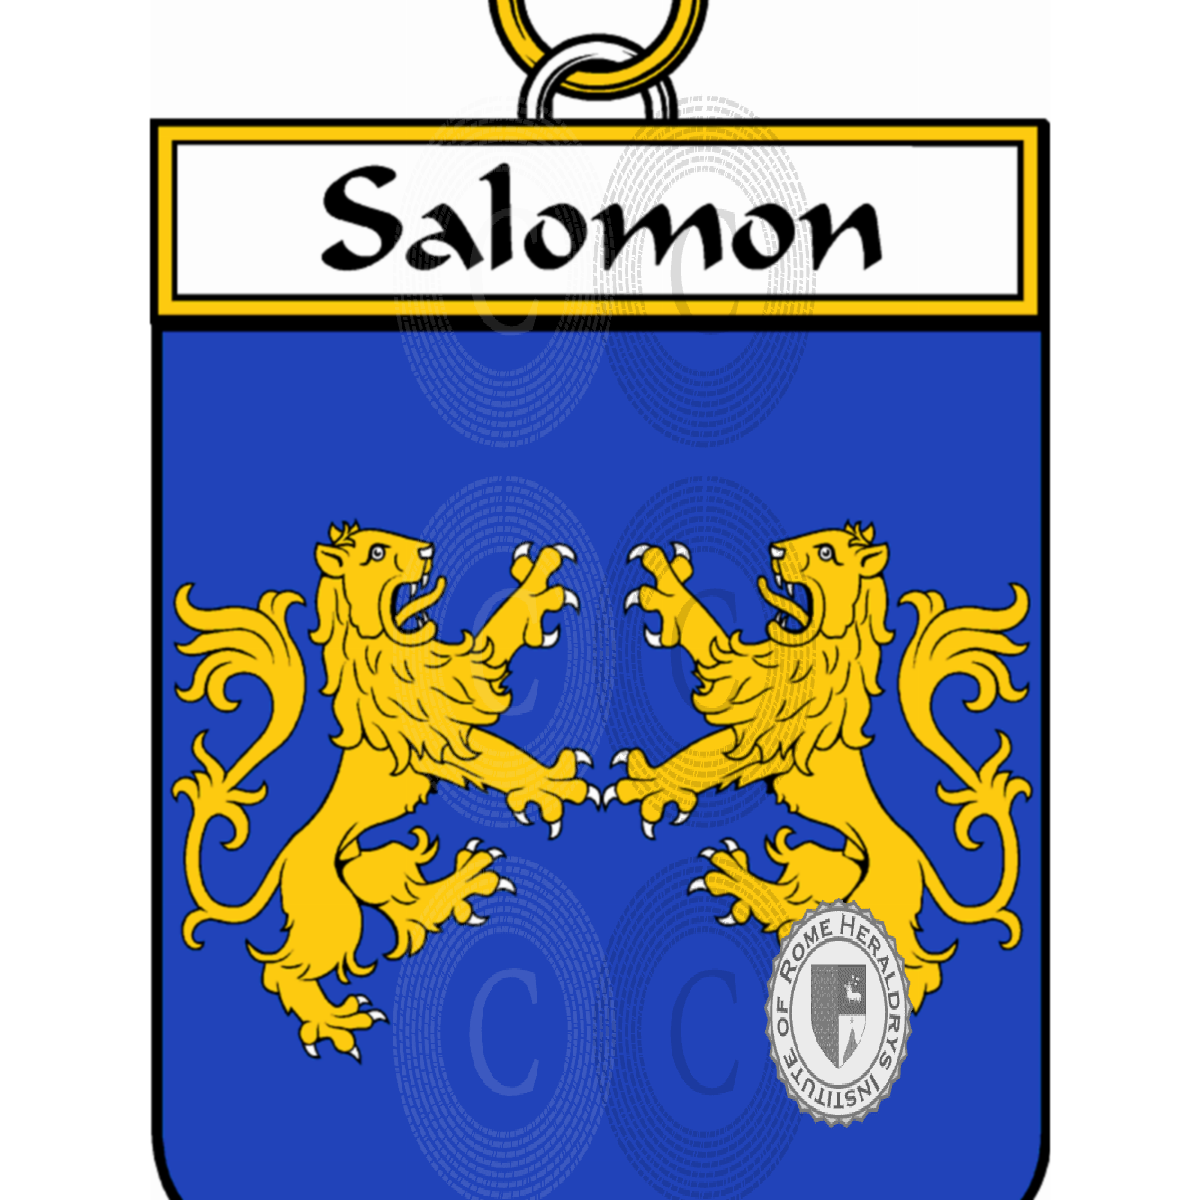 Stemma della famigliaSalomon de la Lande, Salomon de Beaufort,Salomon de la Lande